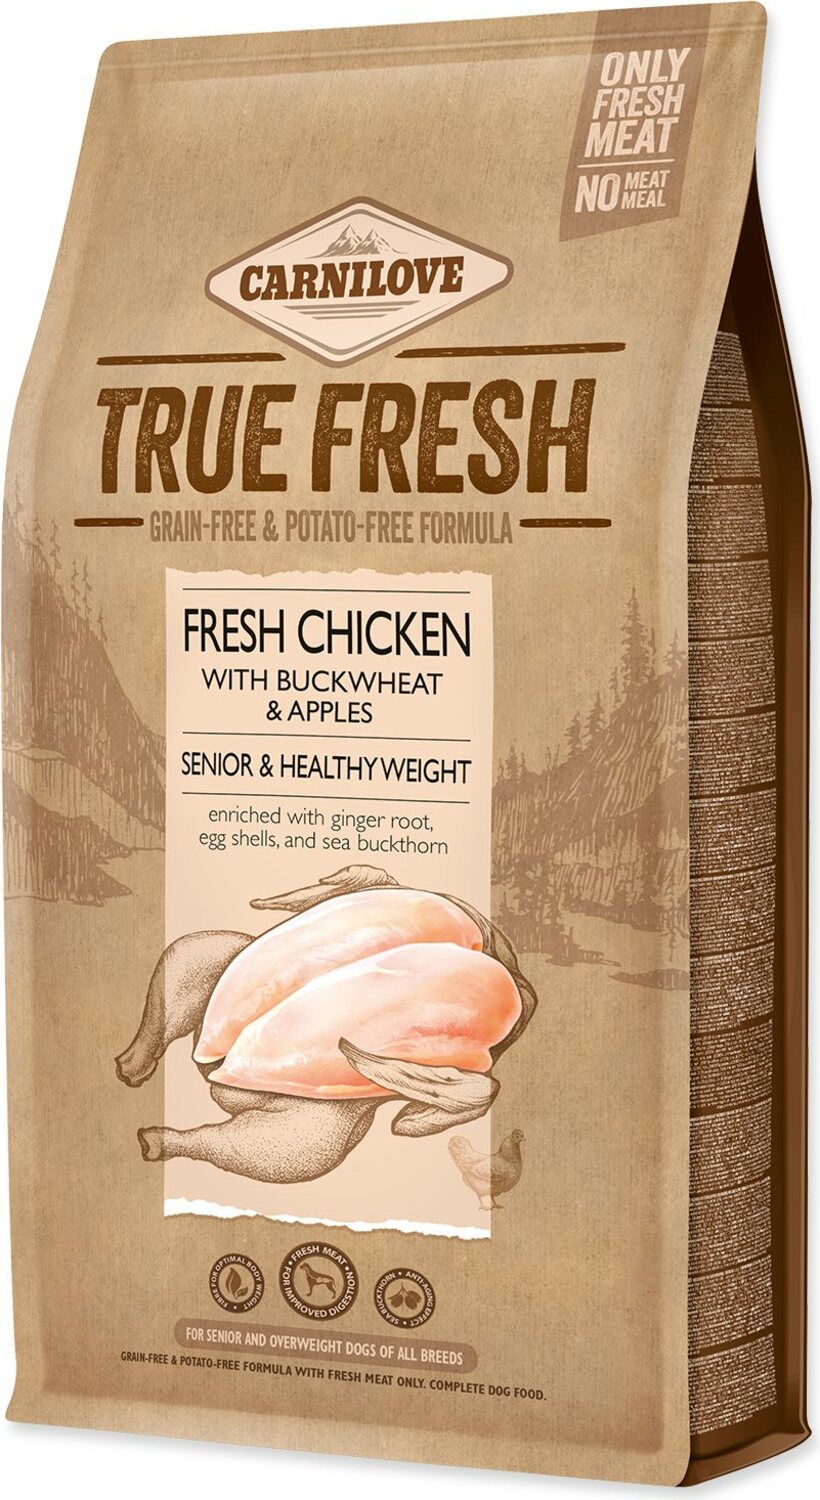 Krmivo Carnilove True Fresh senior Healthy Weight Chicken 1,4kg